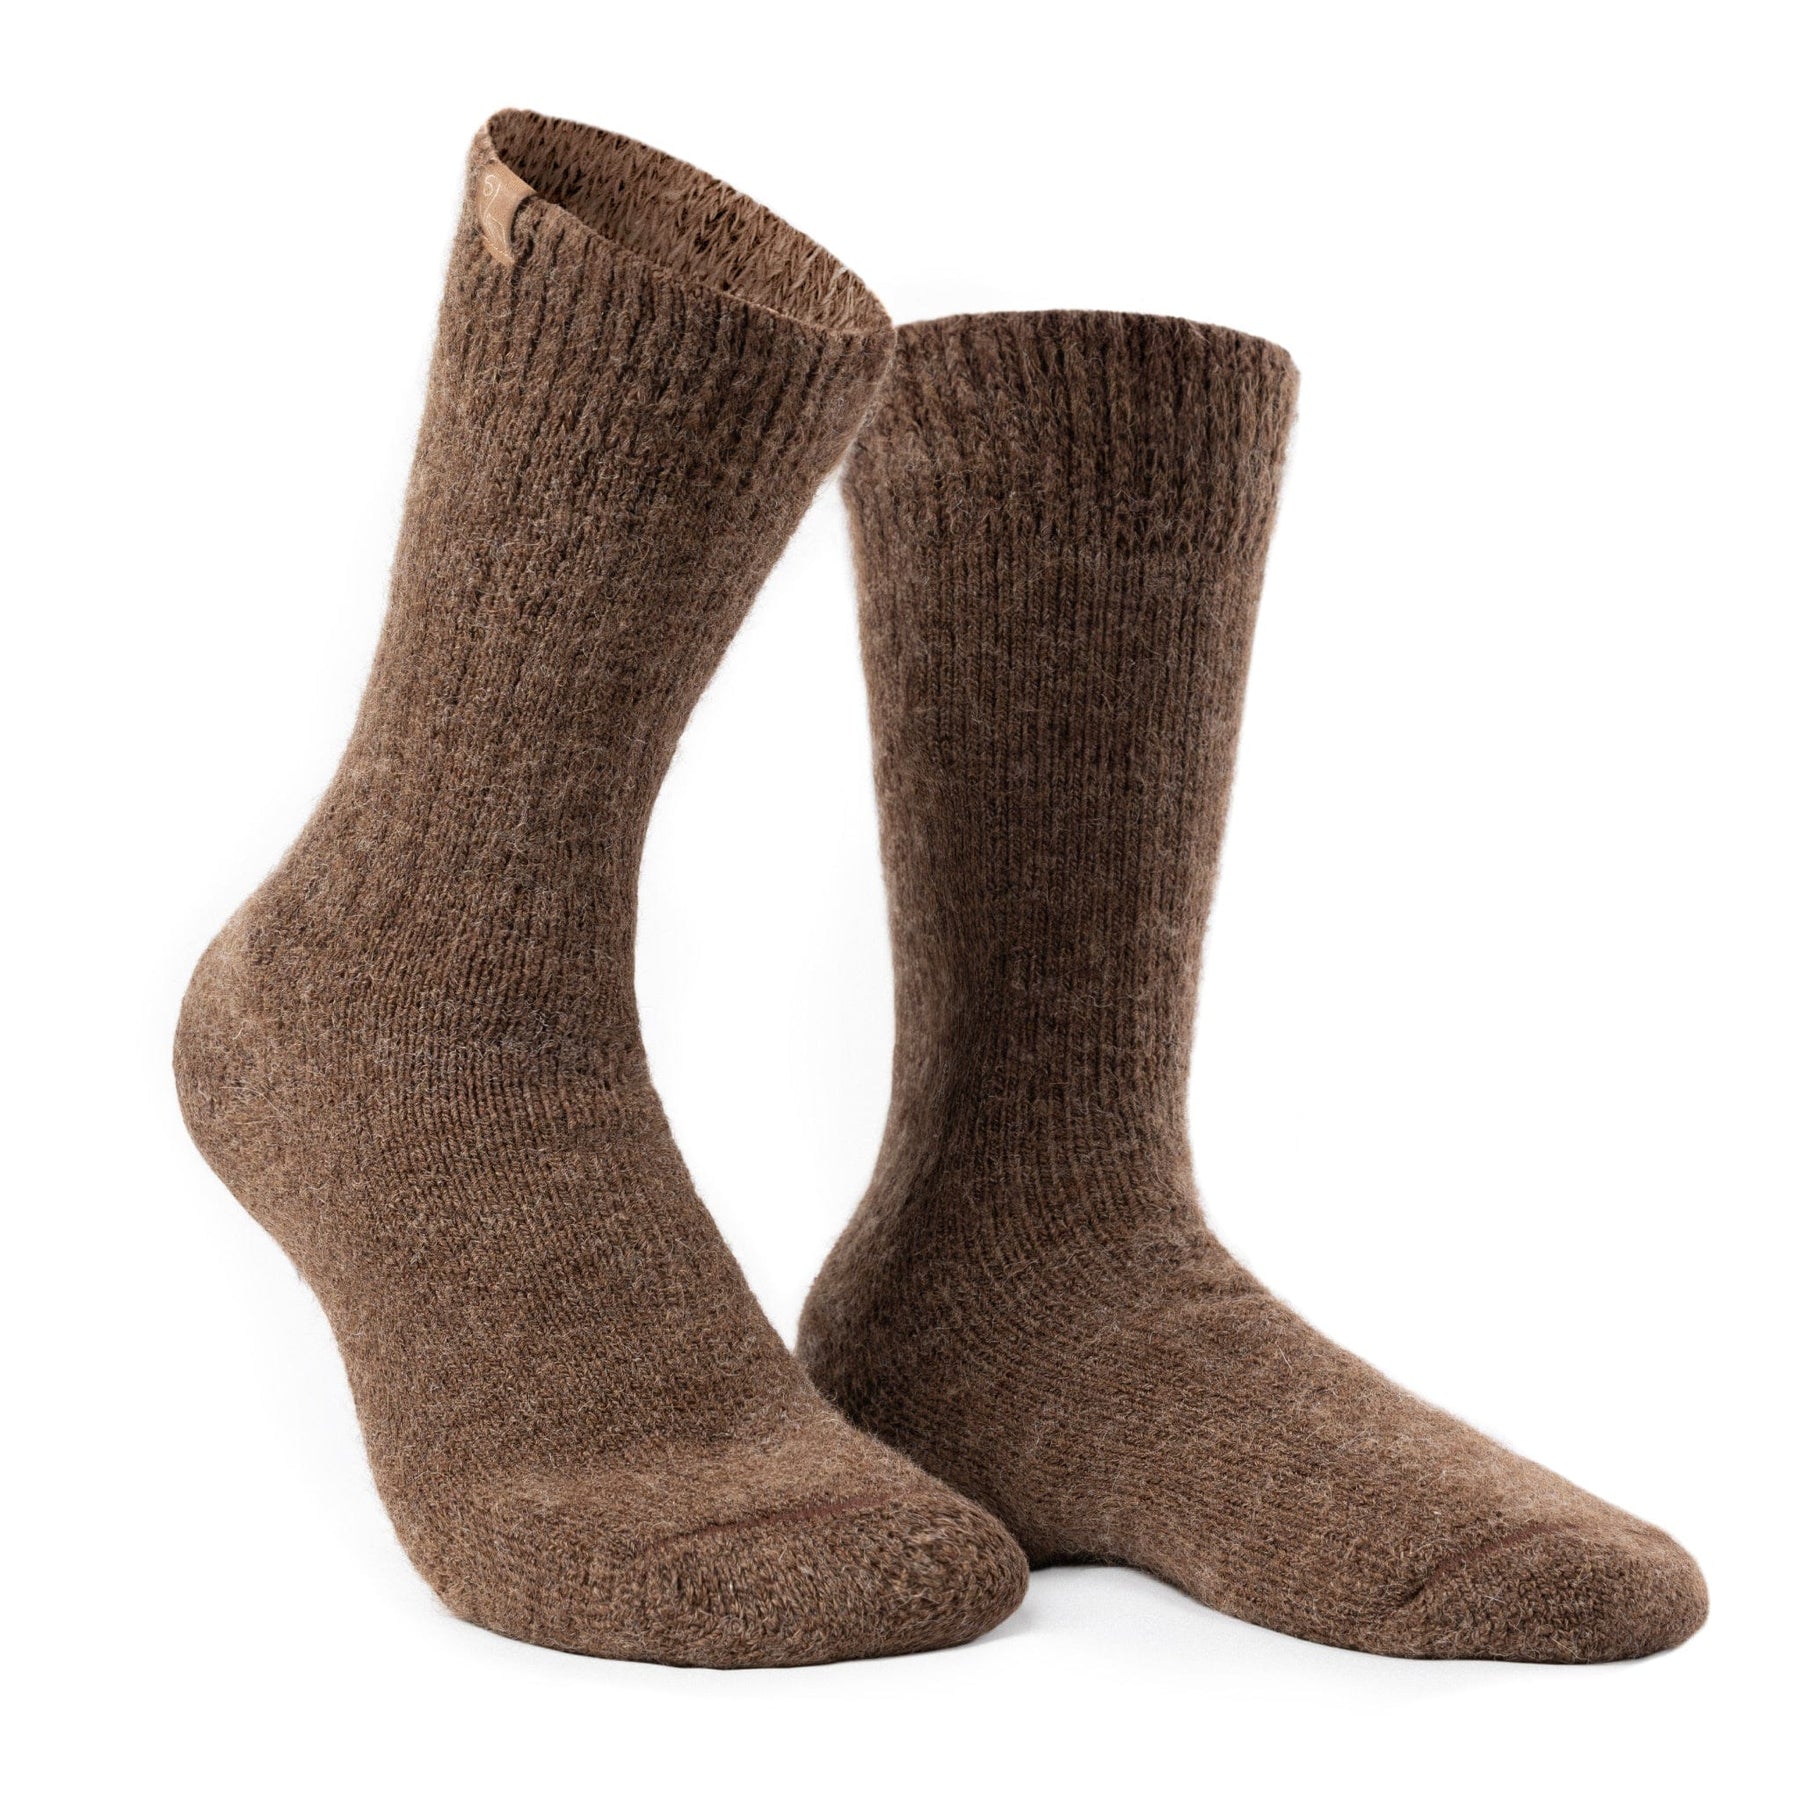 Thermal Alpaca Socks